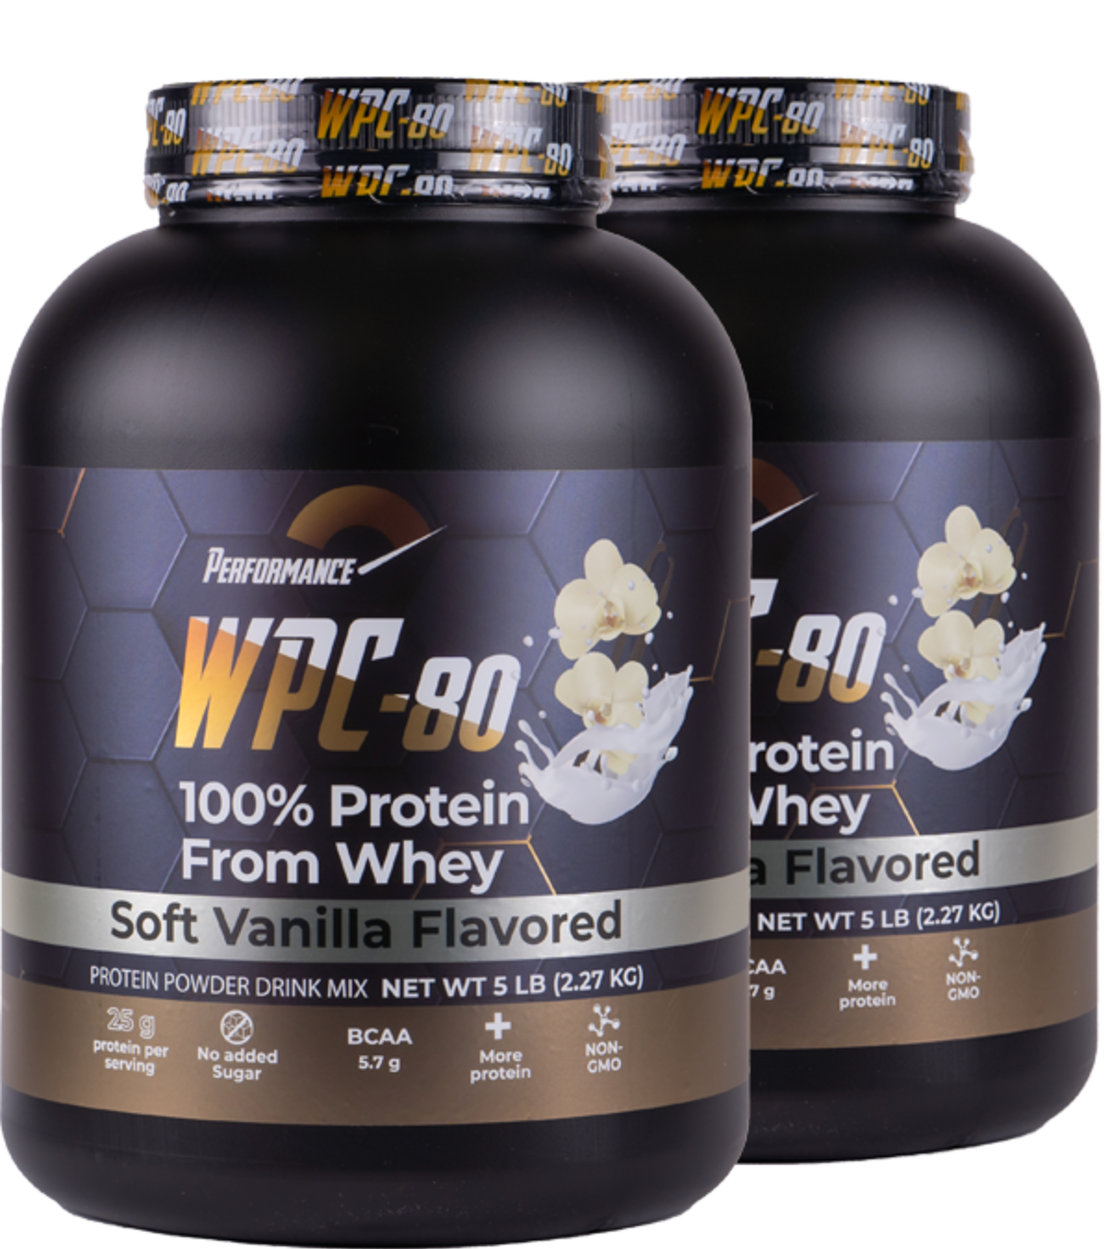 אבקת חלבון הטובה בעולם | אבקת חלבון WPC - 80 PERFORMANCE | אבקת חלבון מבצע זוגות